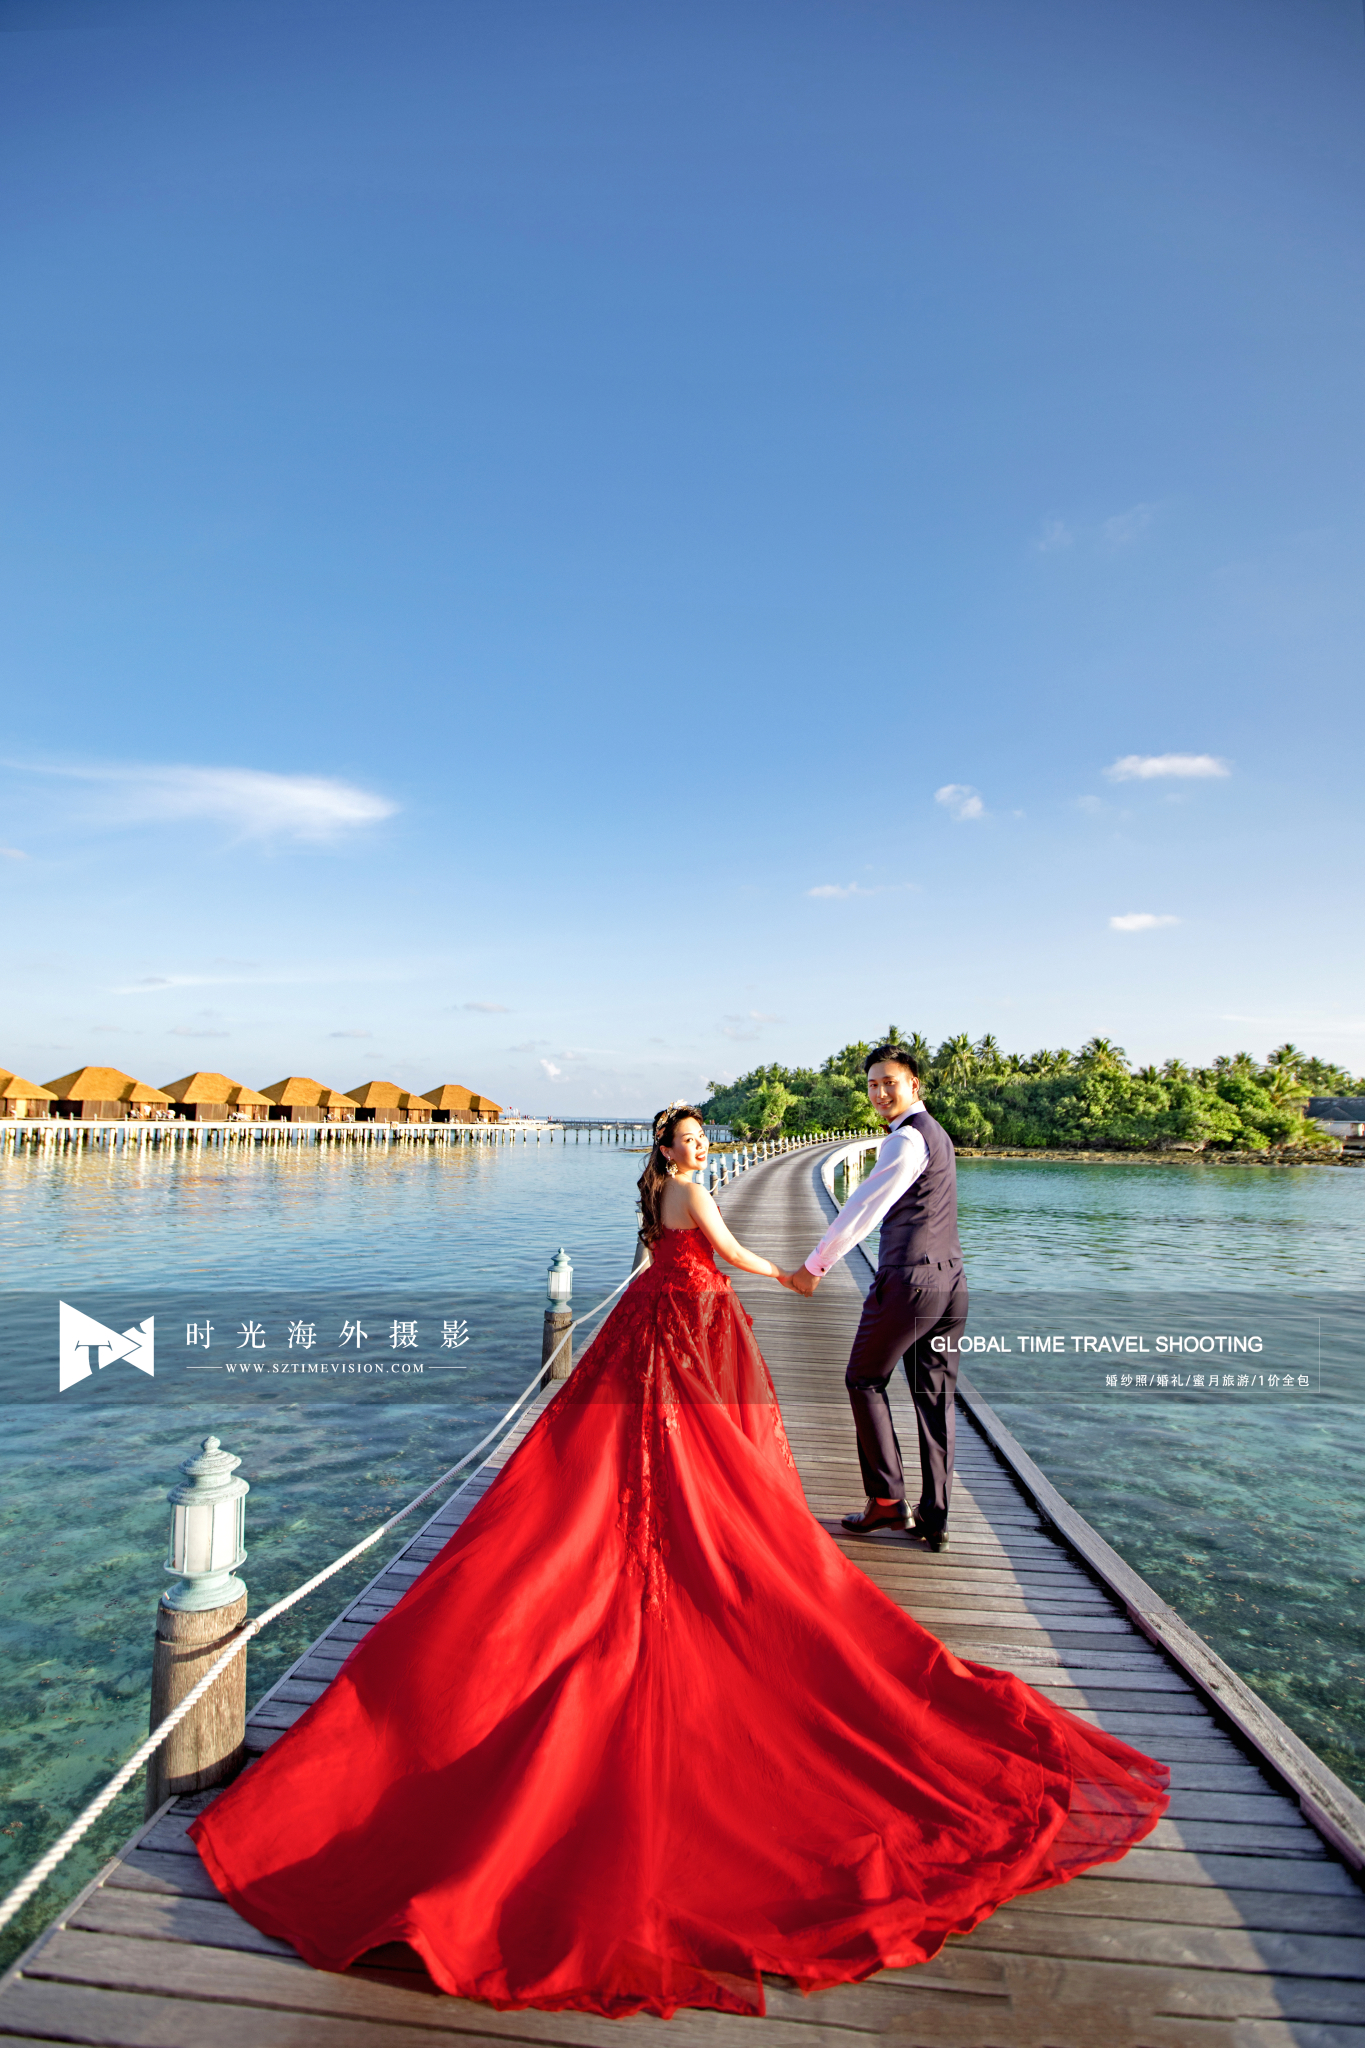 梦想已久的马尔代夫蜜月旅,内附超美婚纱照